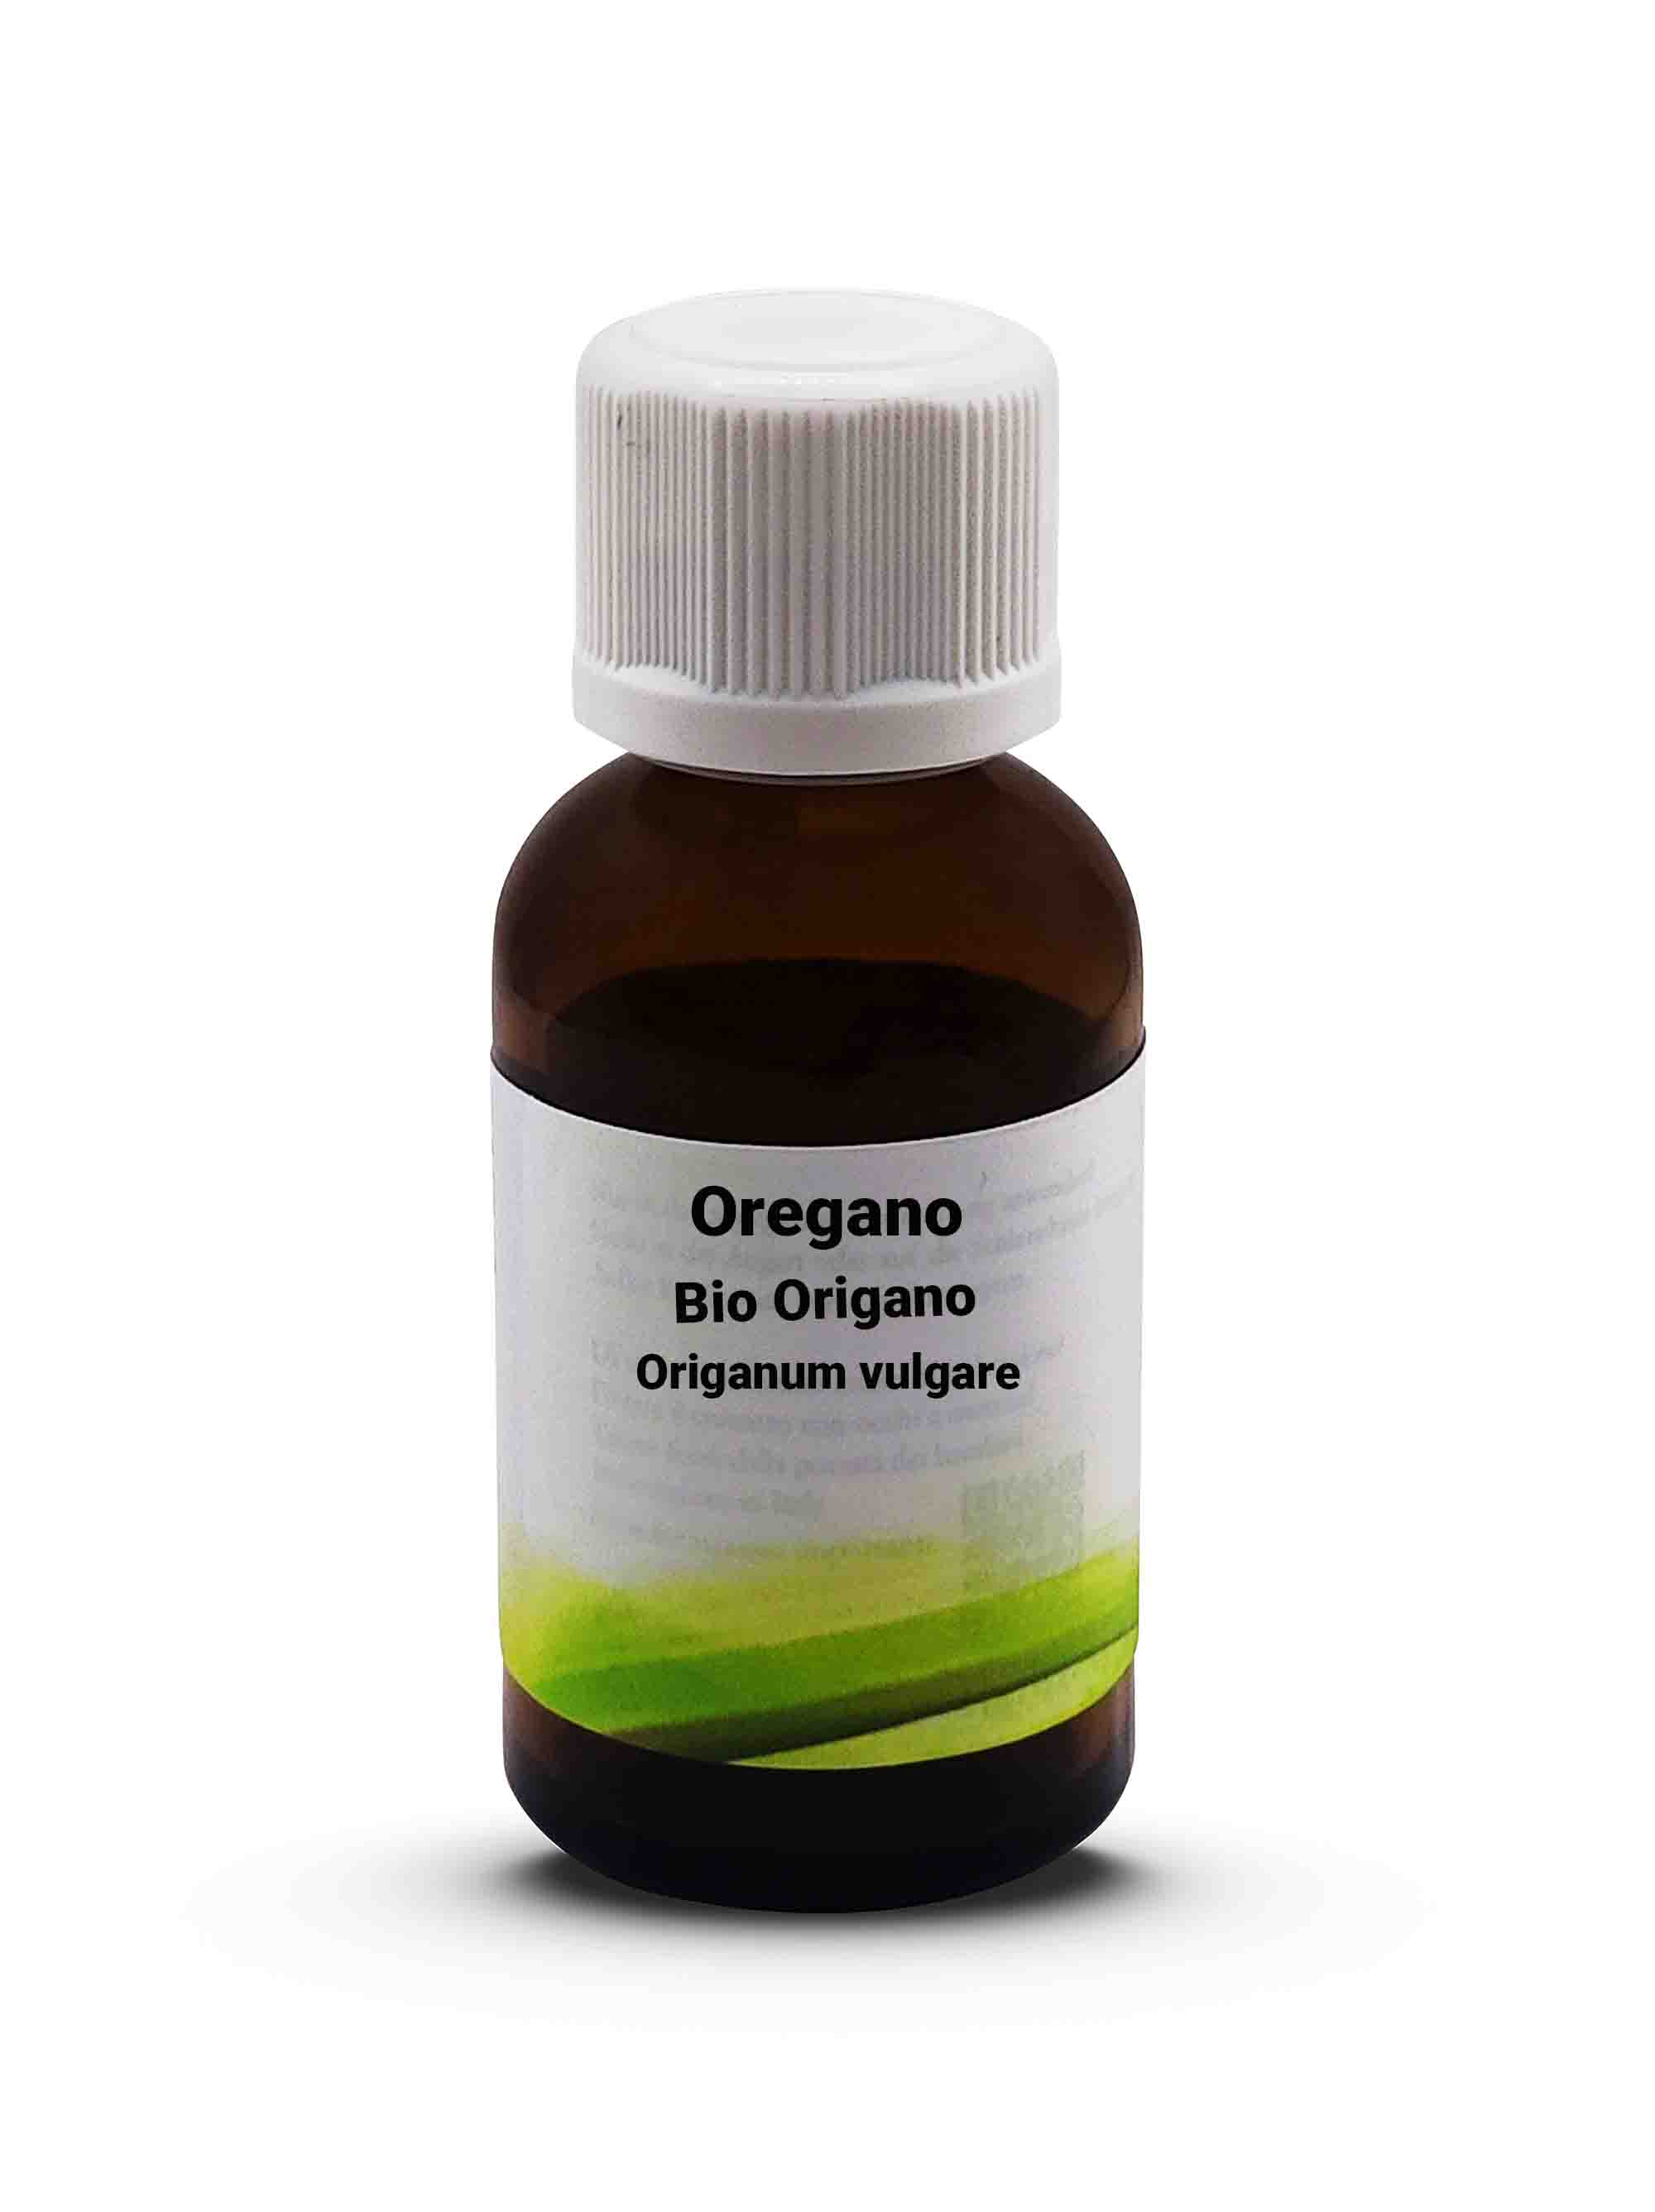 Origano  Bio Oregano - Origanum vulgare 30 ml